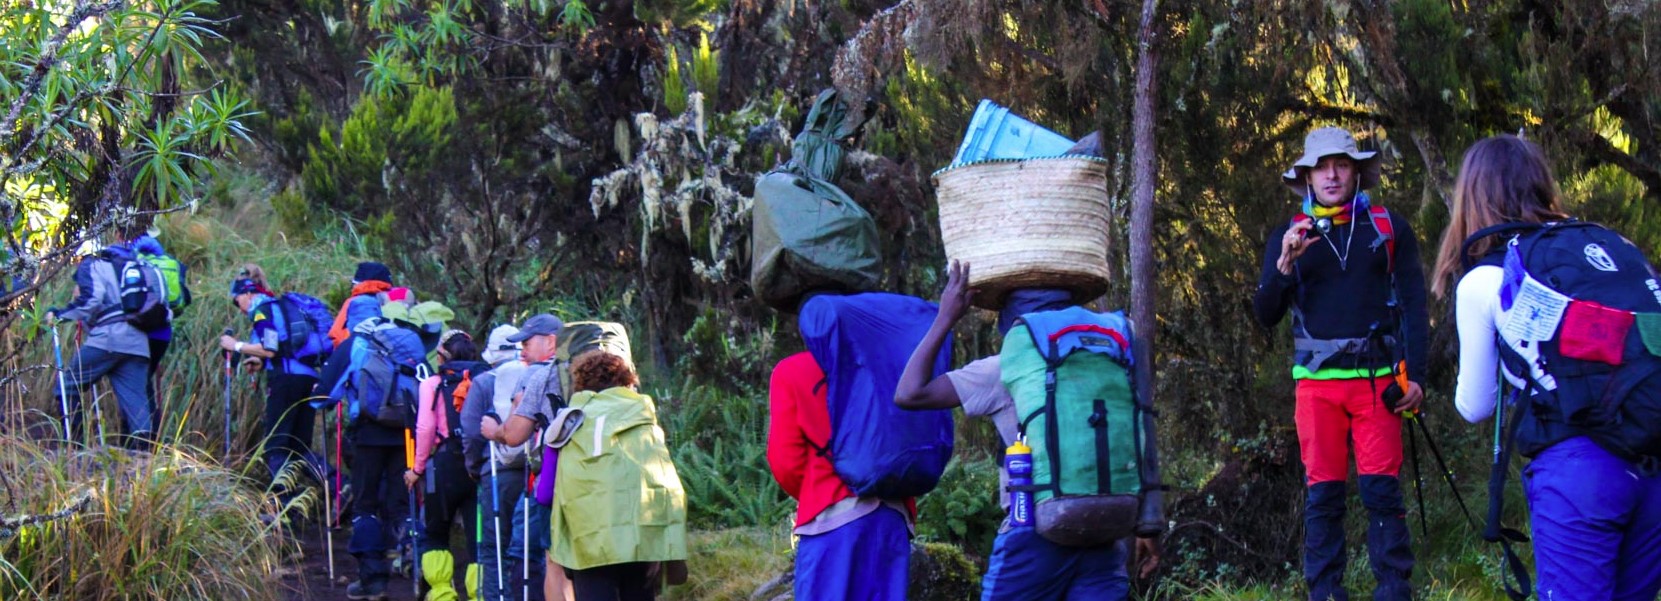 Kilimanjaro Hike Marangu Route-7 Days